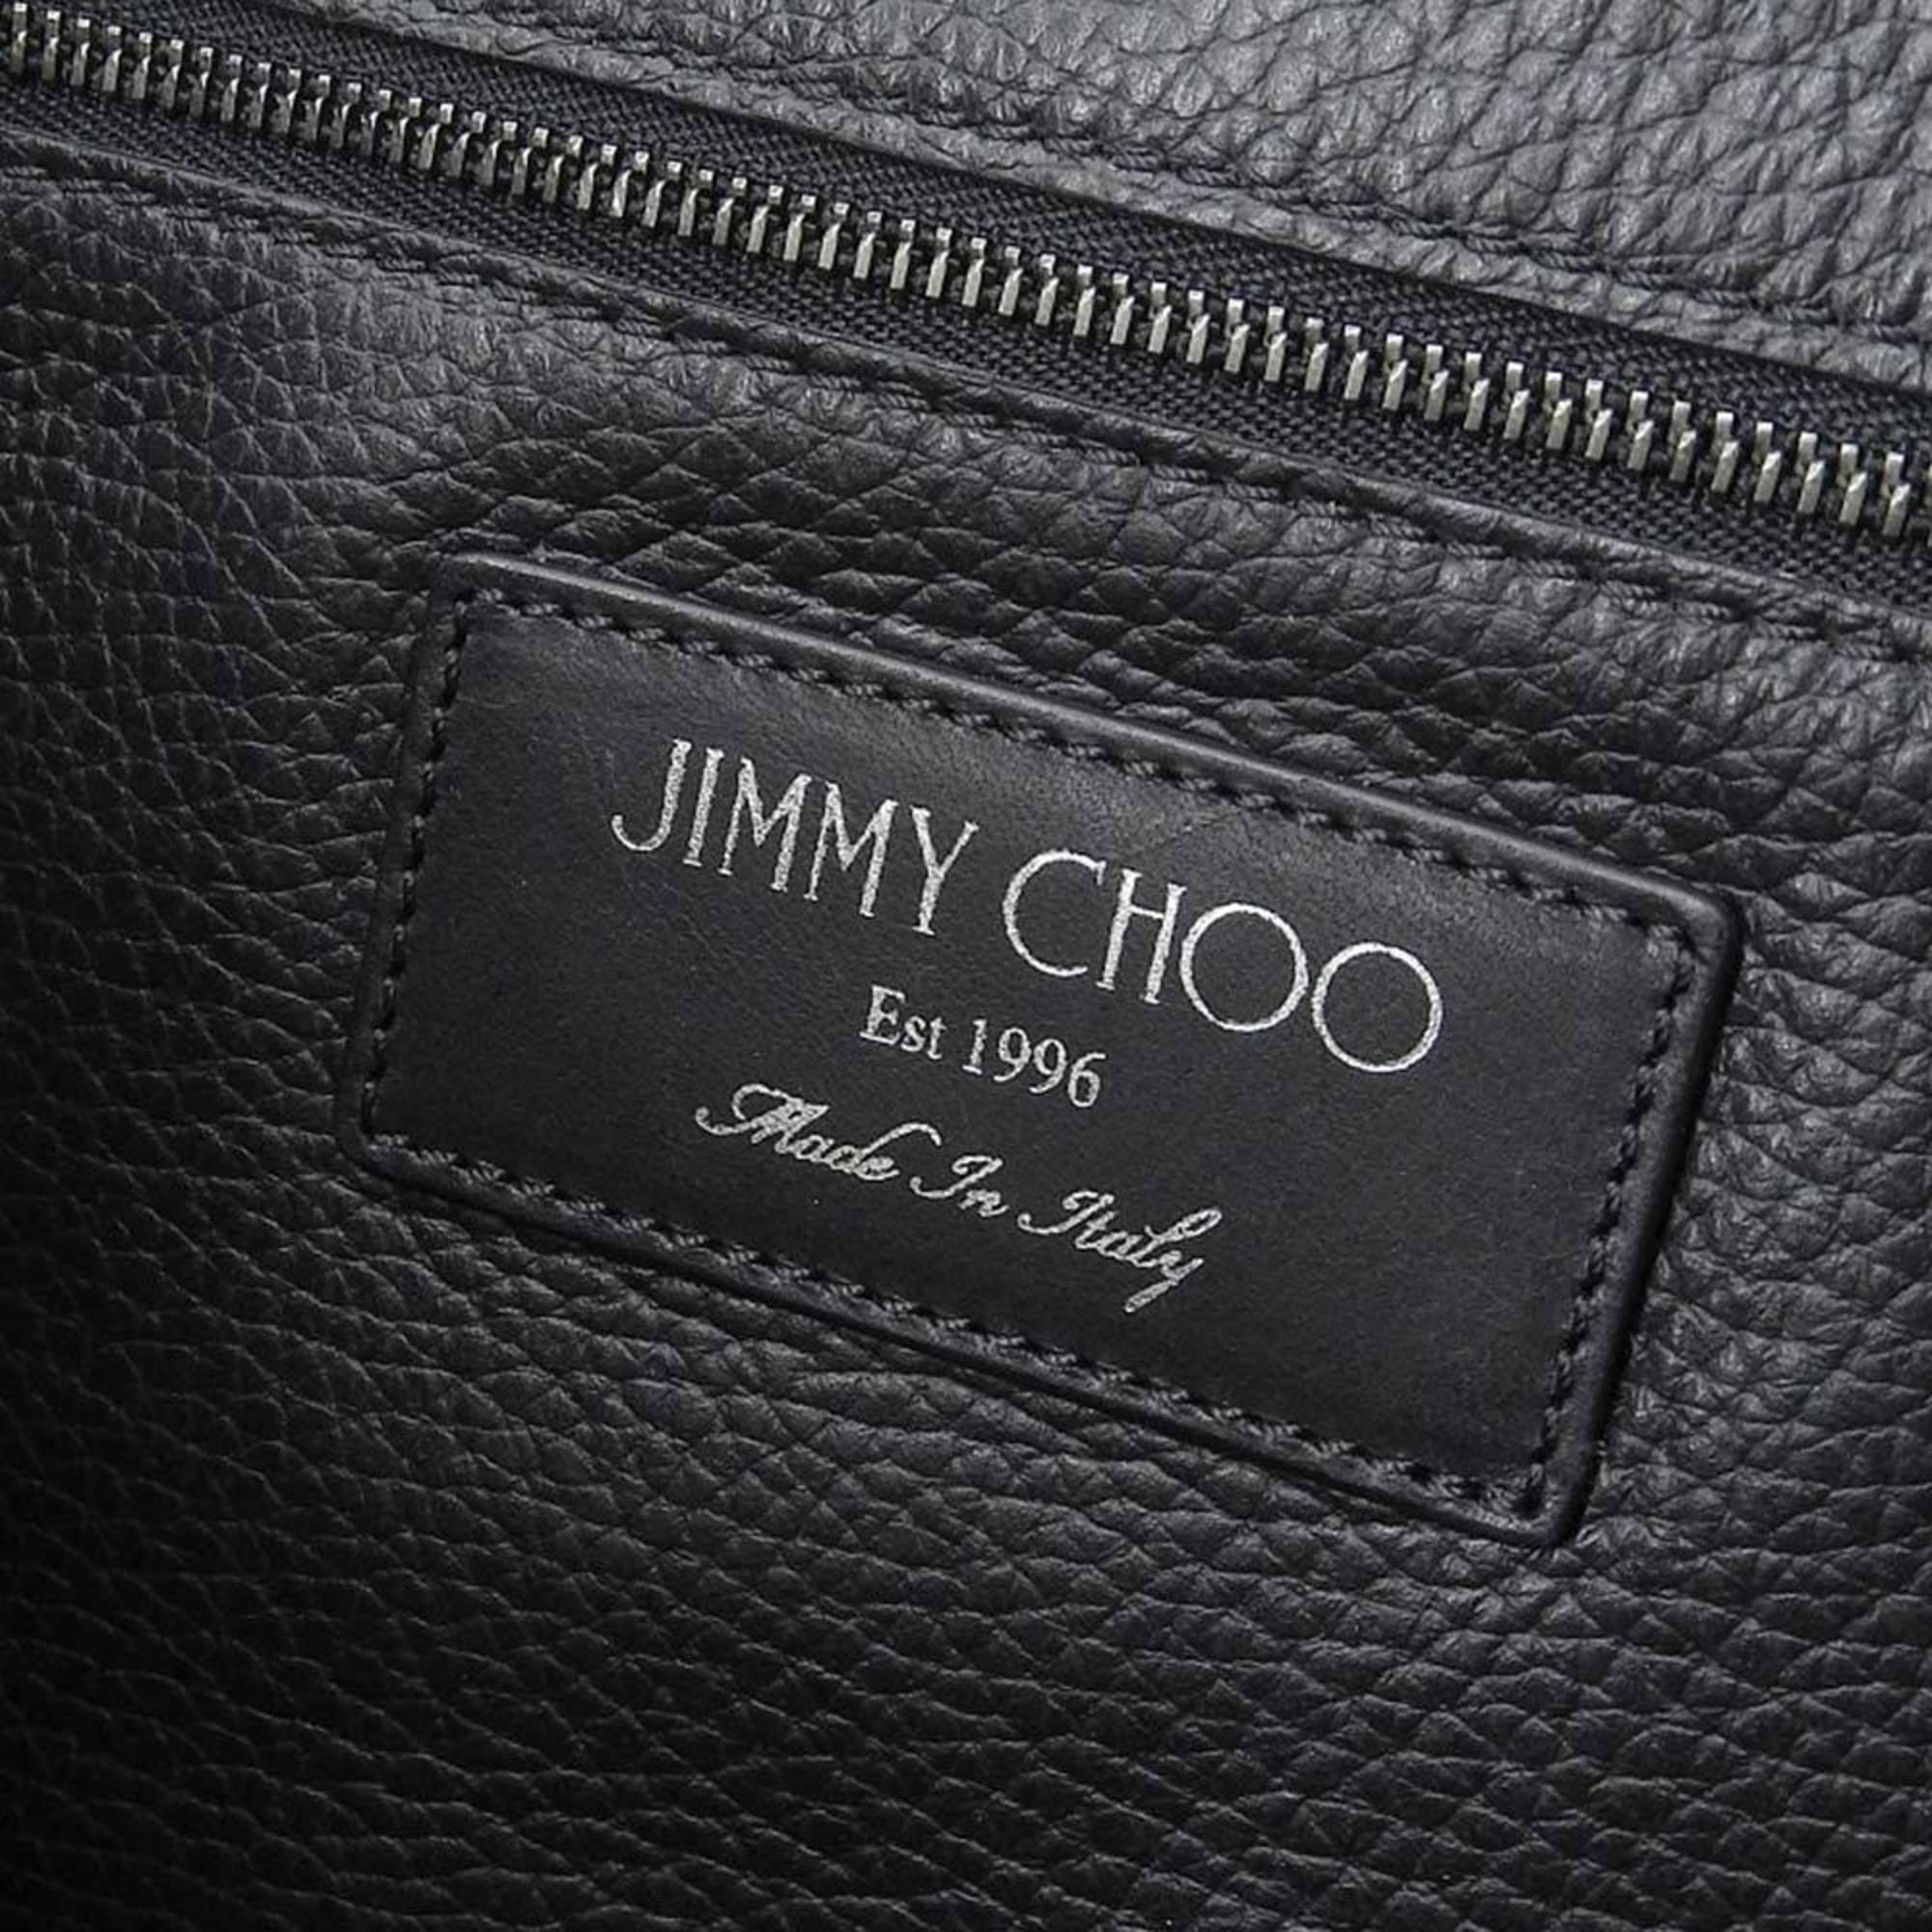 Jimmy Choo JIMMY CHOO star studs tote bag leather black